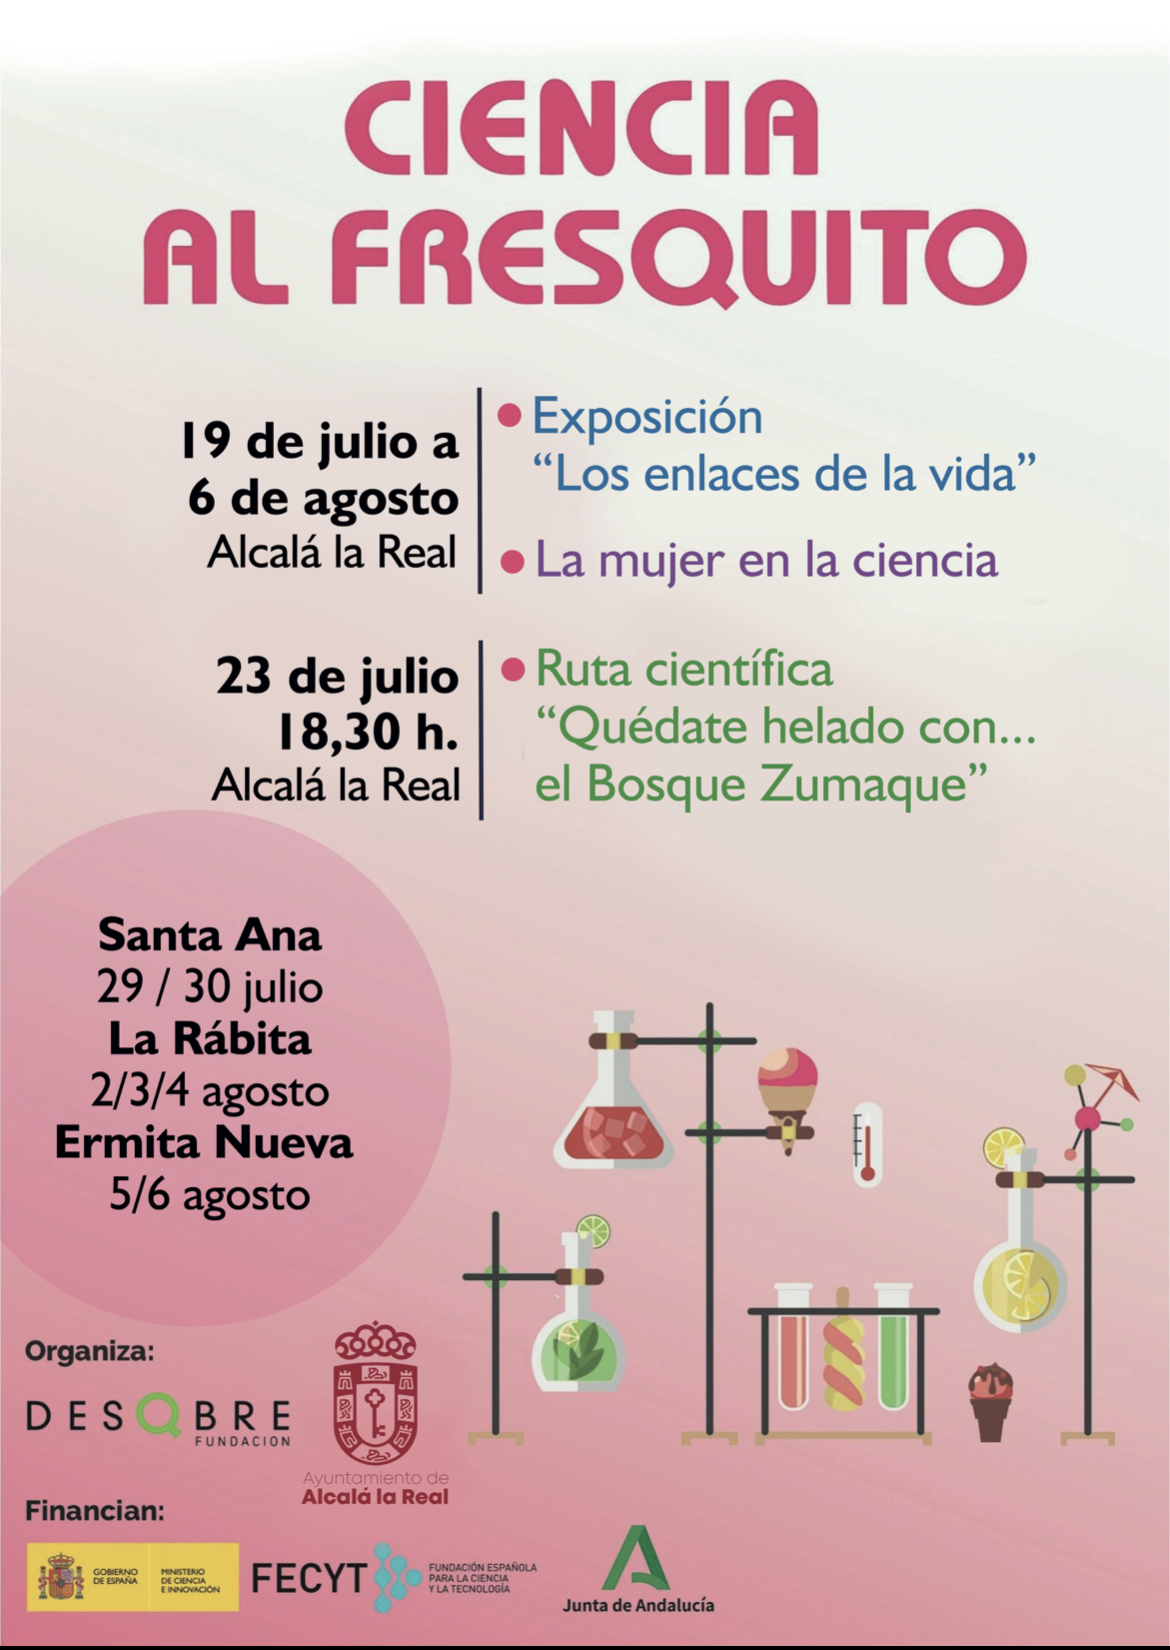 Ciencia al fresquito” la nueva iniciativa del área de Educación este verano – Ayuntamiento de Alcalá la Real